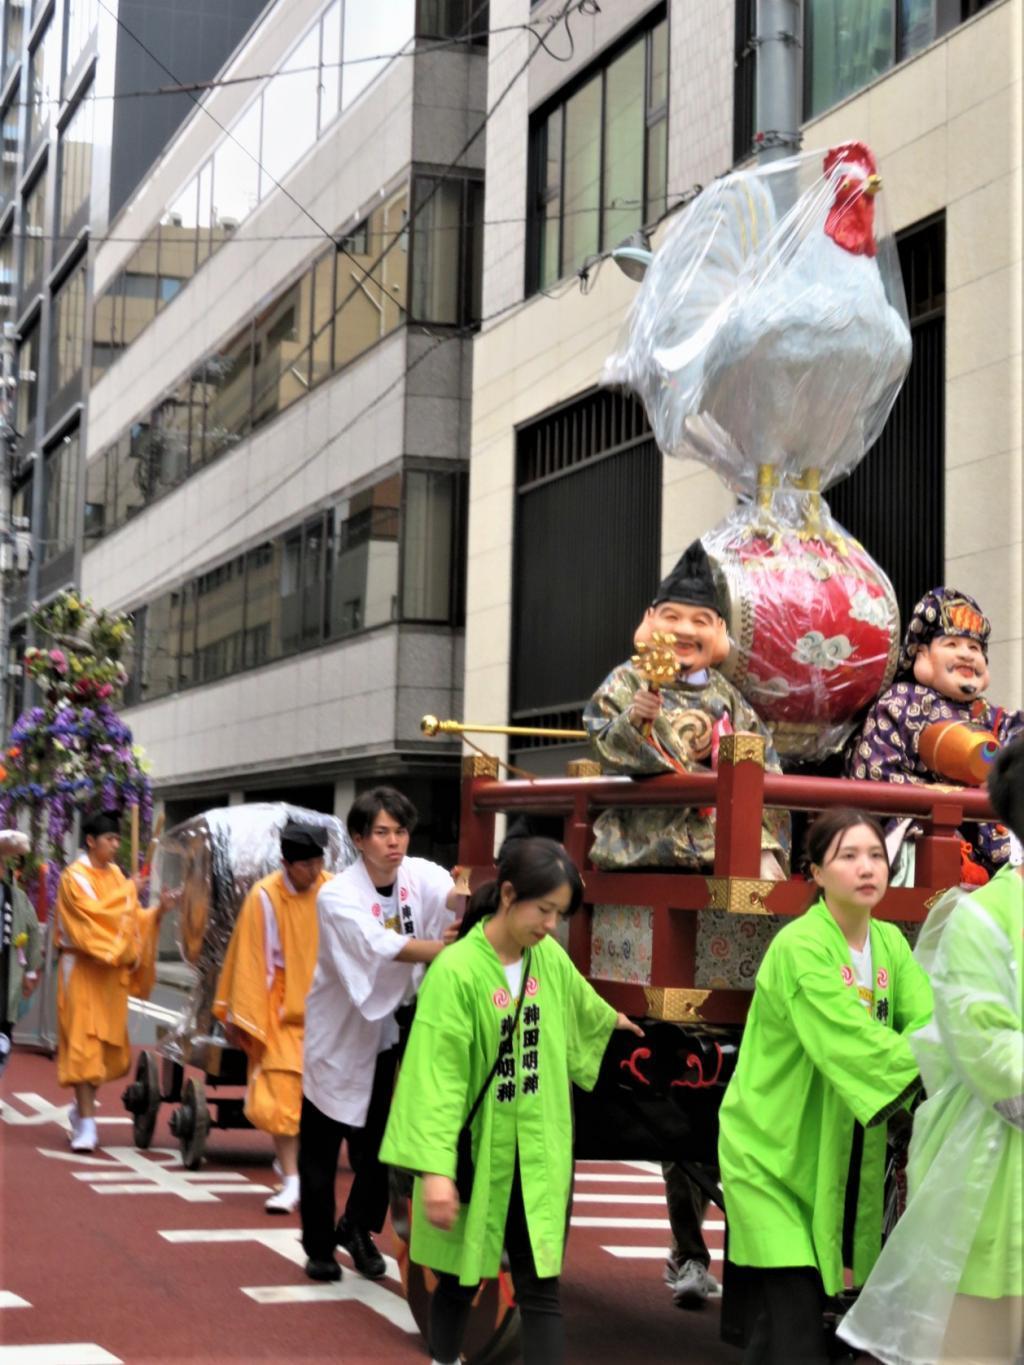  神田祭『神幸祭』『附け祭』が無事締められました。
関連イベント（in日本橋三越ほか）のご案内!